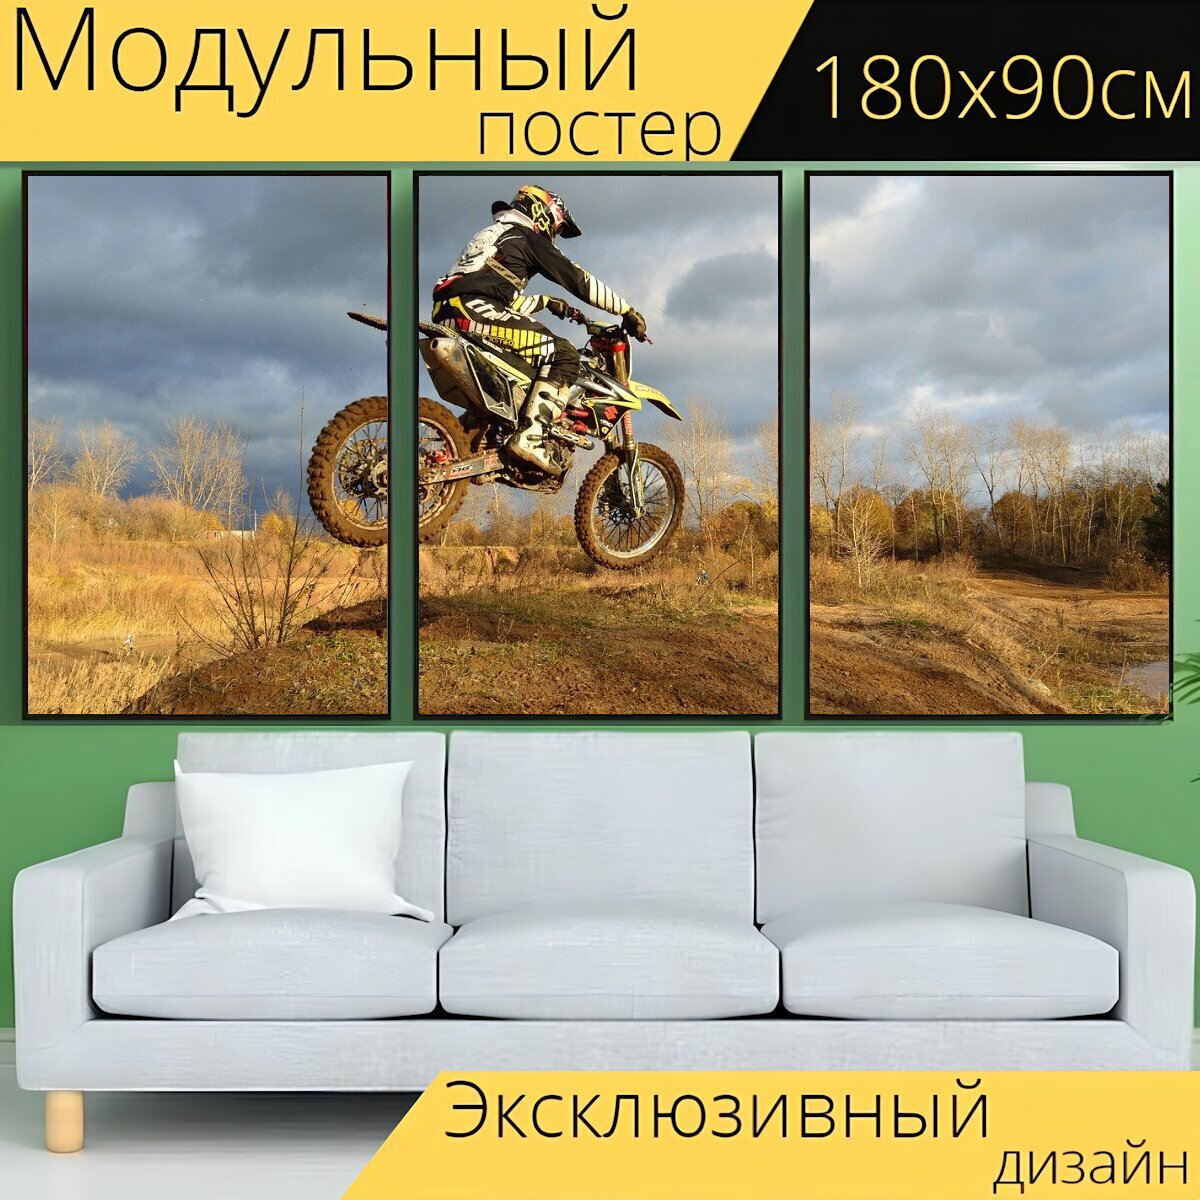 Модульный постер "Велосипед грязи, мотоцикл, прыгать" 180 x 90 см. для интерьера